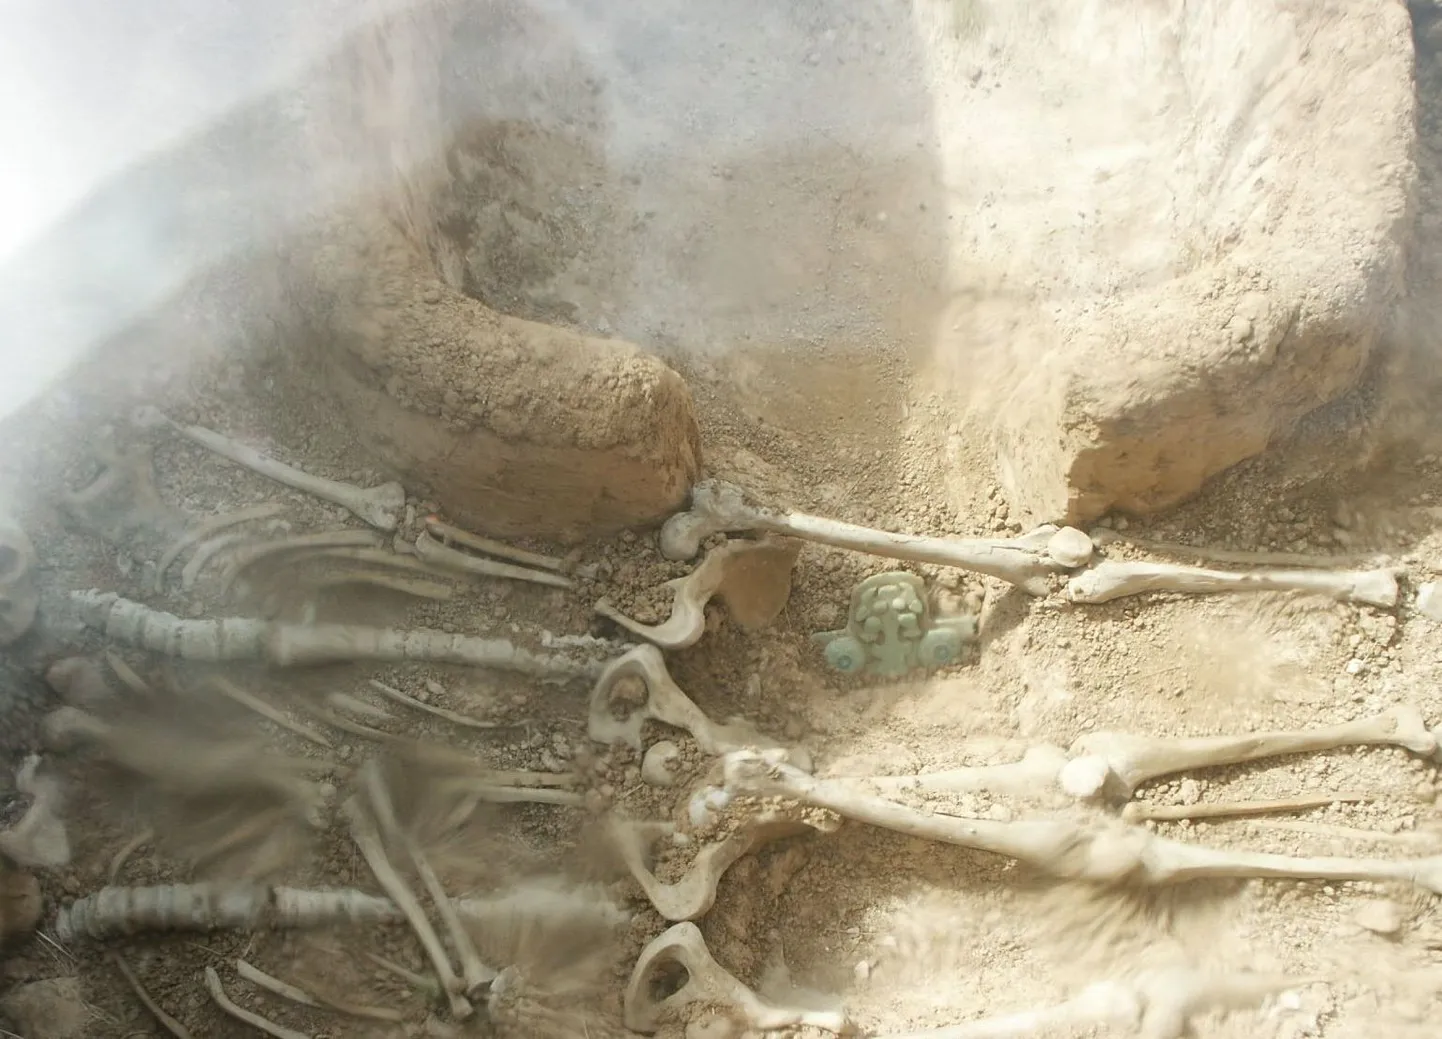 Peruust leiti inkade-eelsel ajastul ohverdatud raseda jäänused